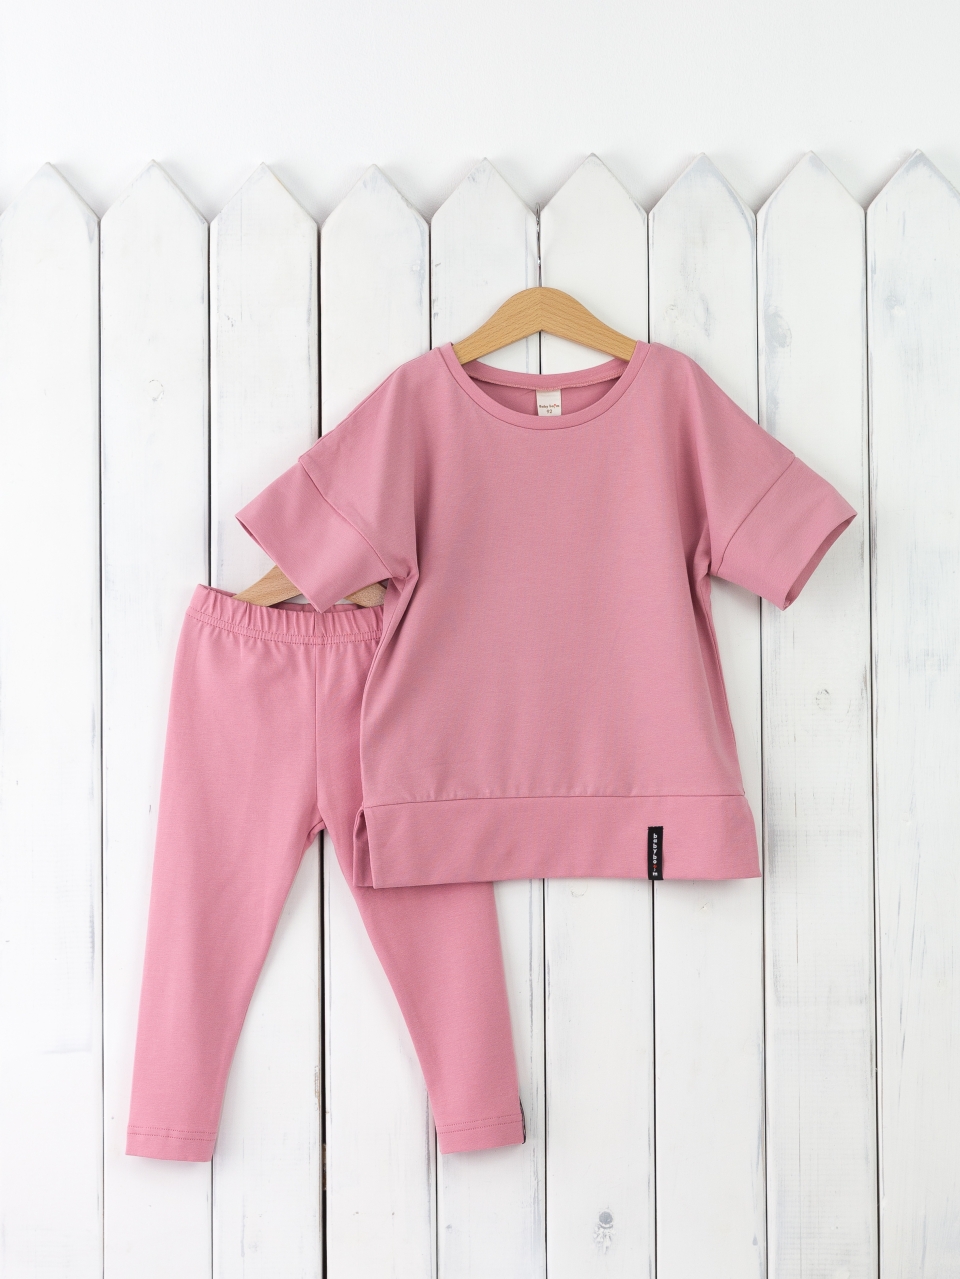 КД352/11-К Комплект для девочки р.110 футболка+легинсы/розовый зефир Бэби Бум - Бугульма 